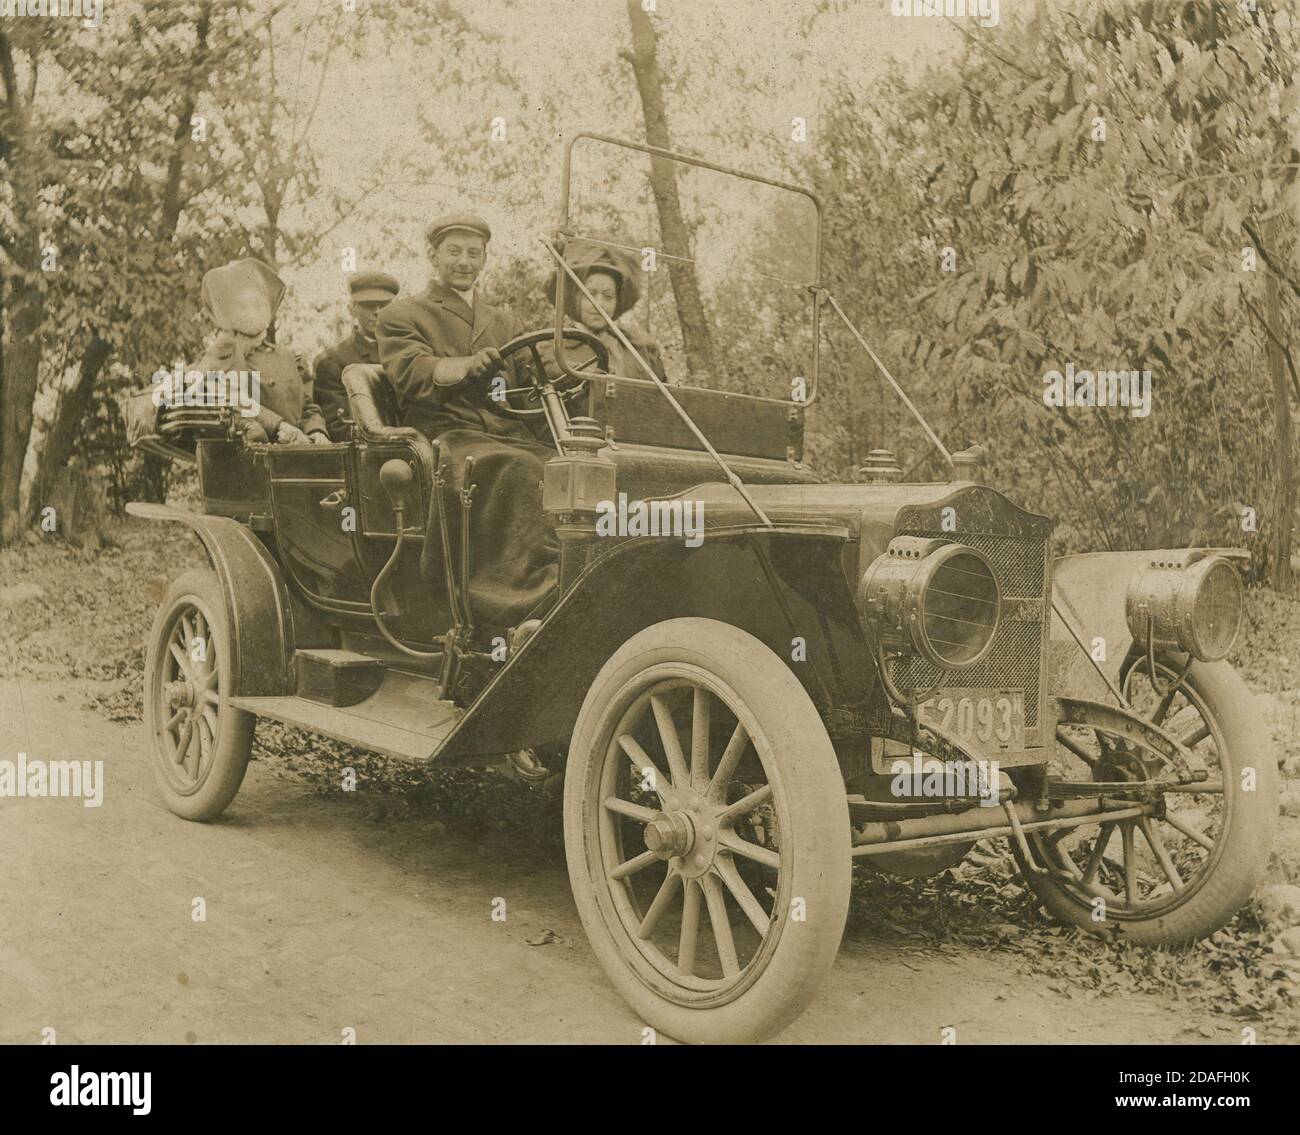 Antikes c1910 Foto. Das Auto scheint ein Maxwell Model Q zu sein, mit einem New Yorker Nummernschild der ersten Generation (1910). QUELLE: ORIGINALFOTO Stockfoto